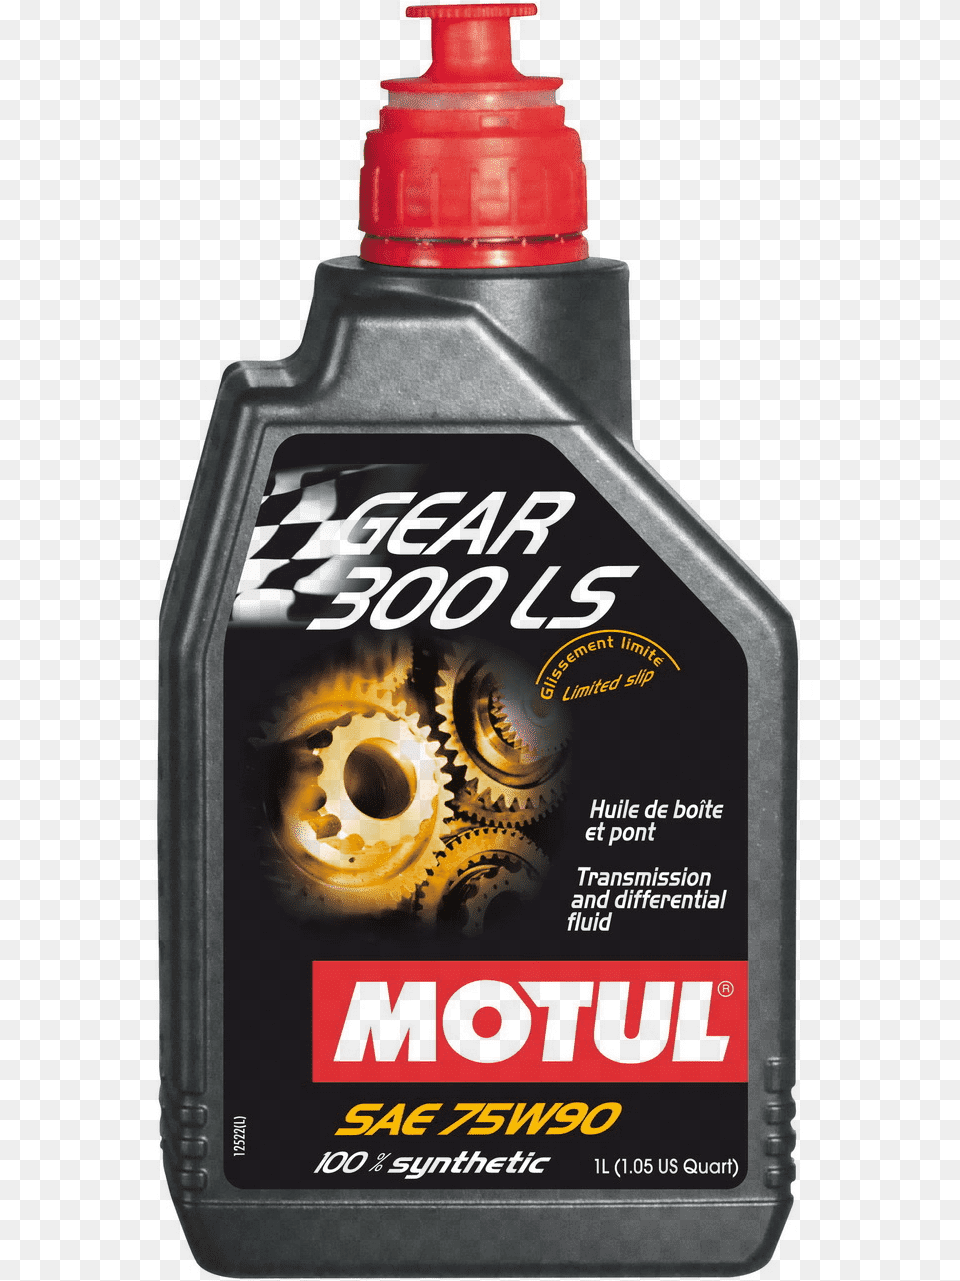 Motul Gear 300 Ls 75w90 Qty 2 Per Order Motul Gear 300 75w90 Ls, Bottle, Face, Head, Person Png